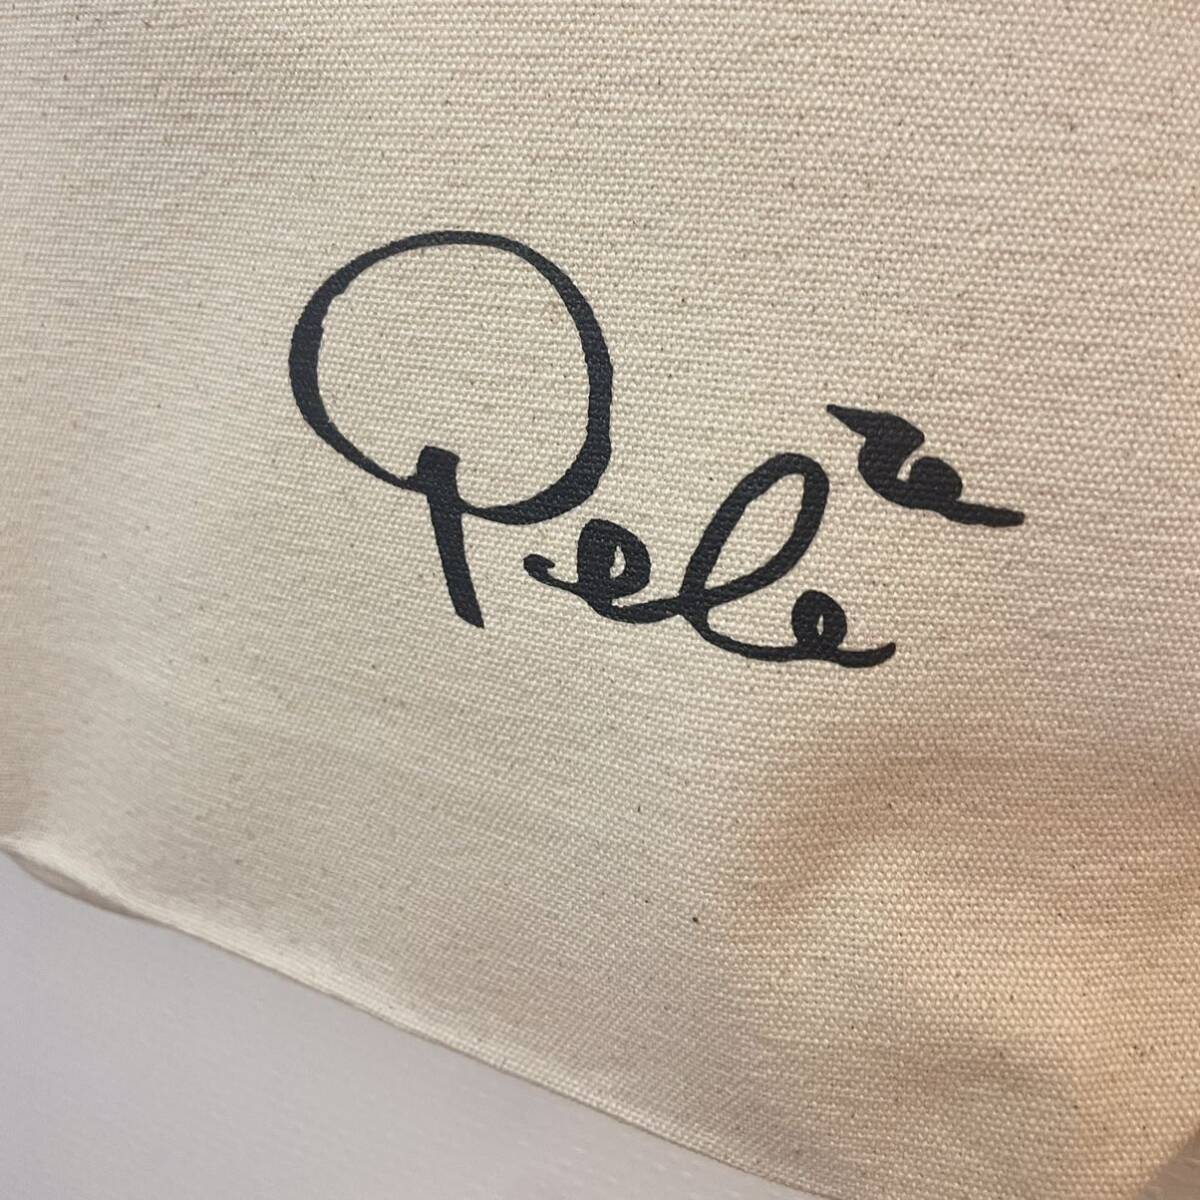  клей san Pele автограф способ большая сумка Гаваи aro - эко-сумка дерево груша cycle 